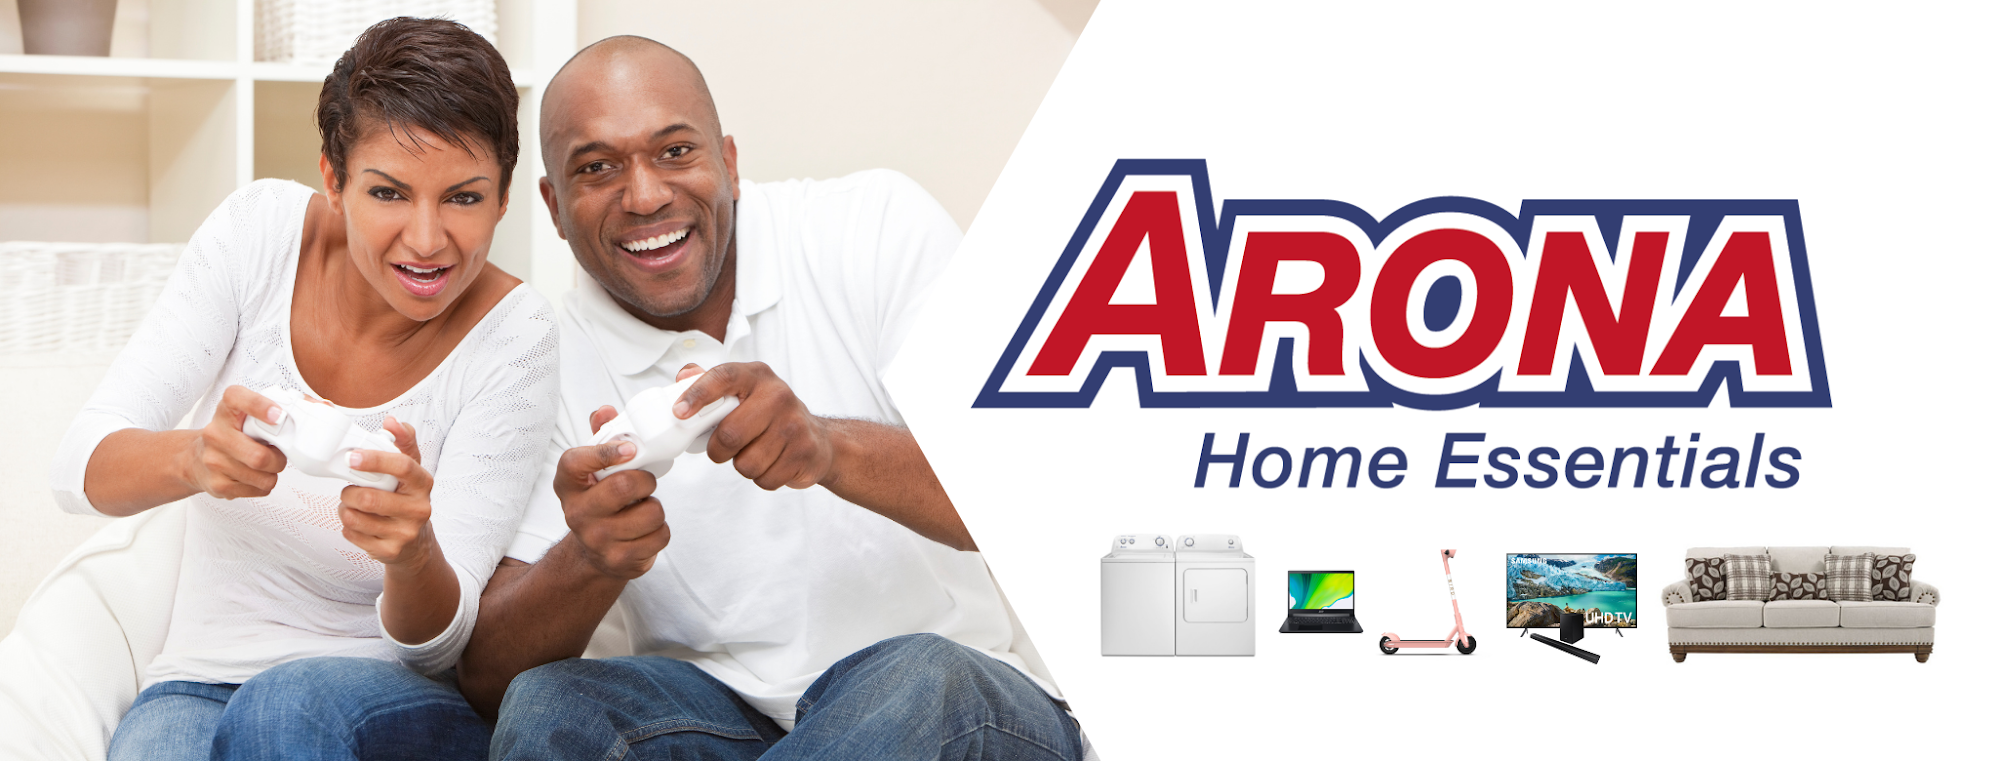 Arona Home Essentials Grandview